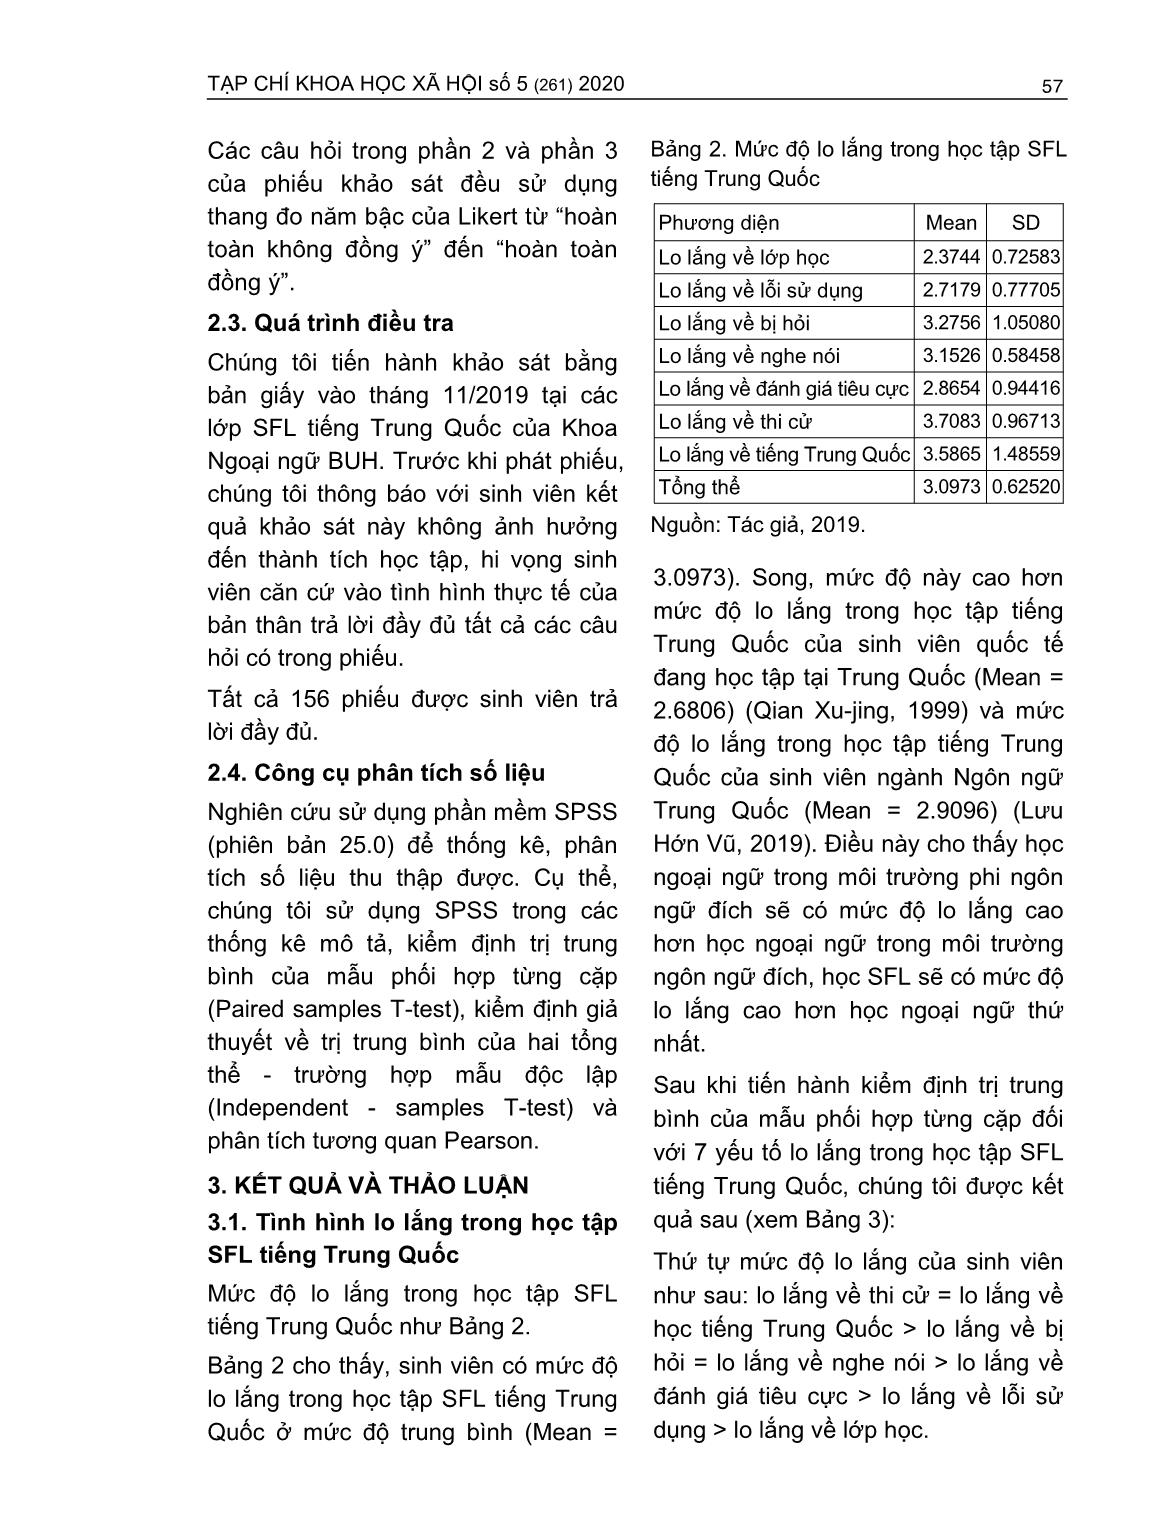 Lo lắng trong học tập tiếng Trung Quốc - Ngoại ngữ thứ hai của sinh viên ngành Ngôn ngữ anh (Trường hợp Trường Đại học Ngân hàng thành phố Hồ Chí Minh) trang 3